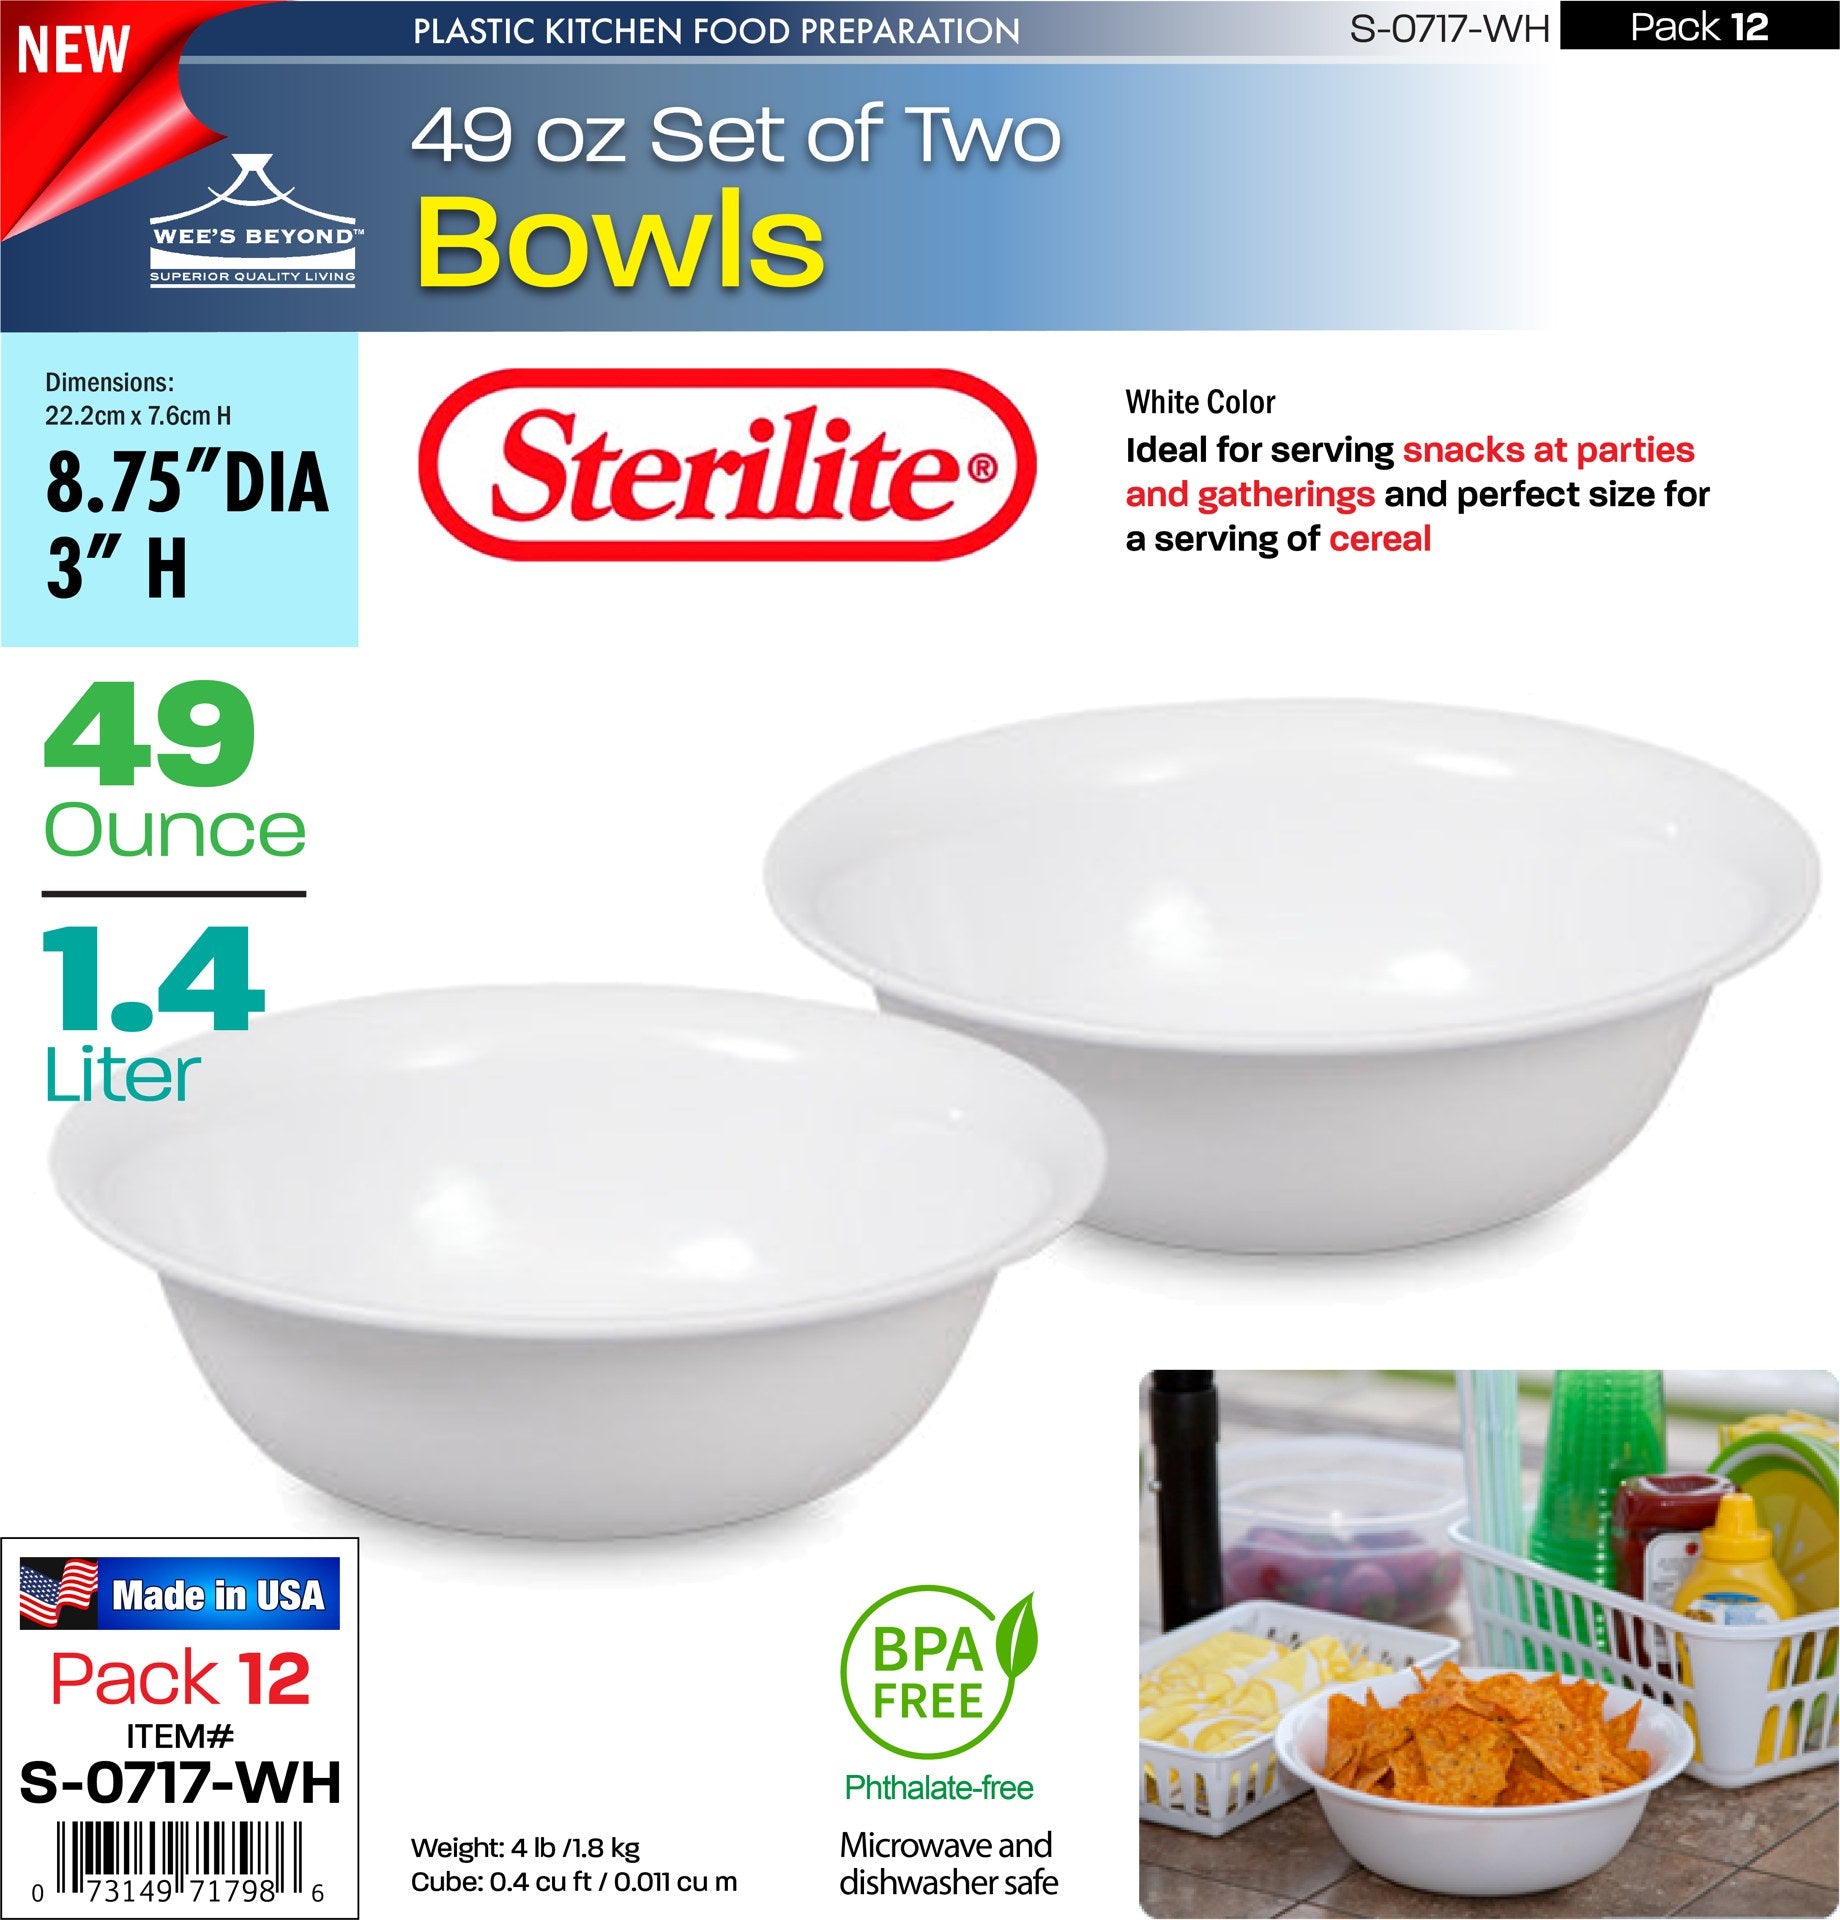 Sterilite Bowls 